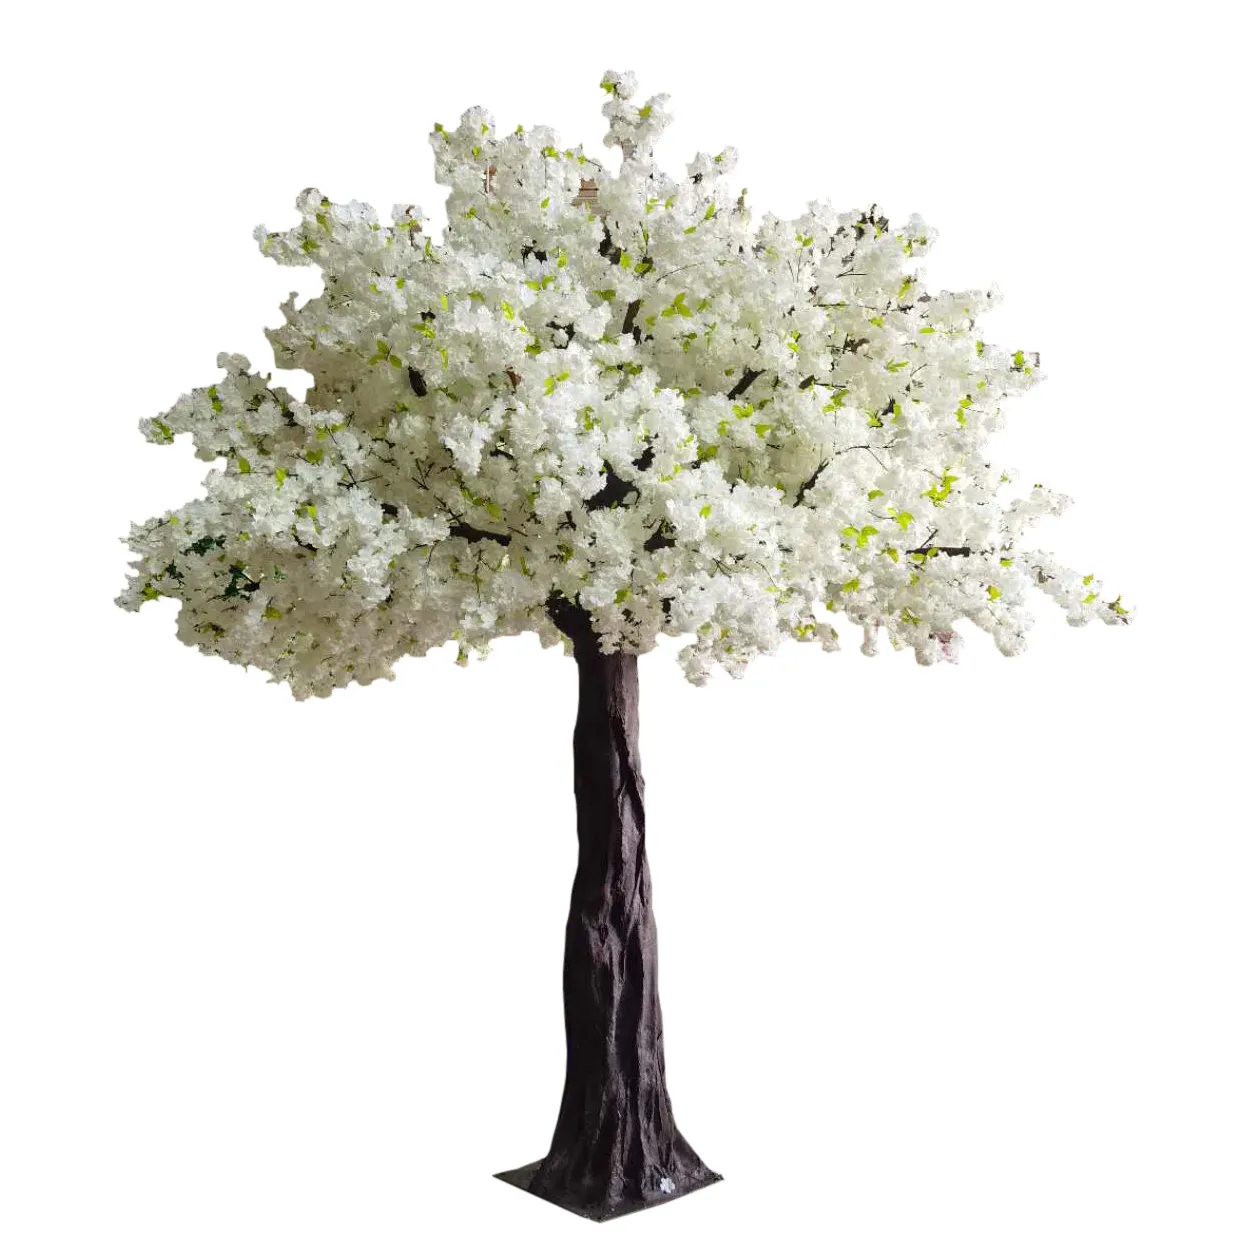 زهرة ساكورا صناعية خارجية وداخلية ذات لون أبيض ووردي شجر نبات طويل وزهرة الكرز الصناعية ديكورات مناسبات حفلات الزفاف